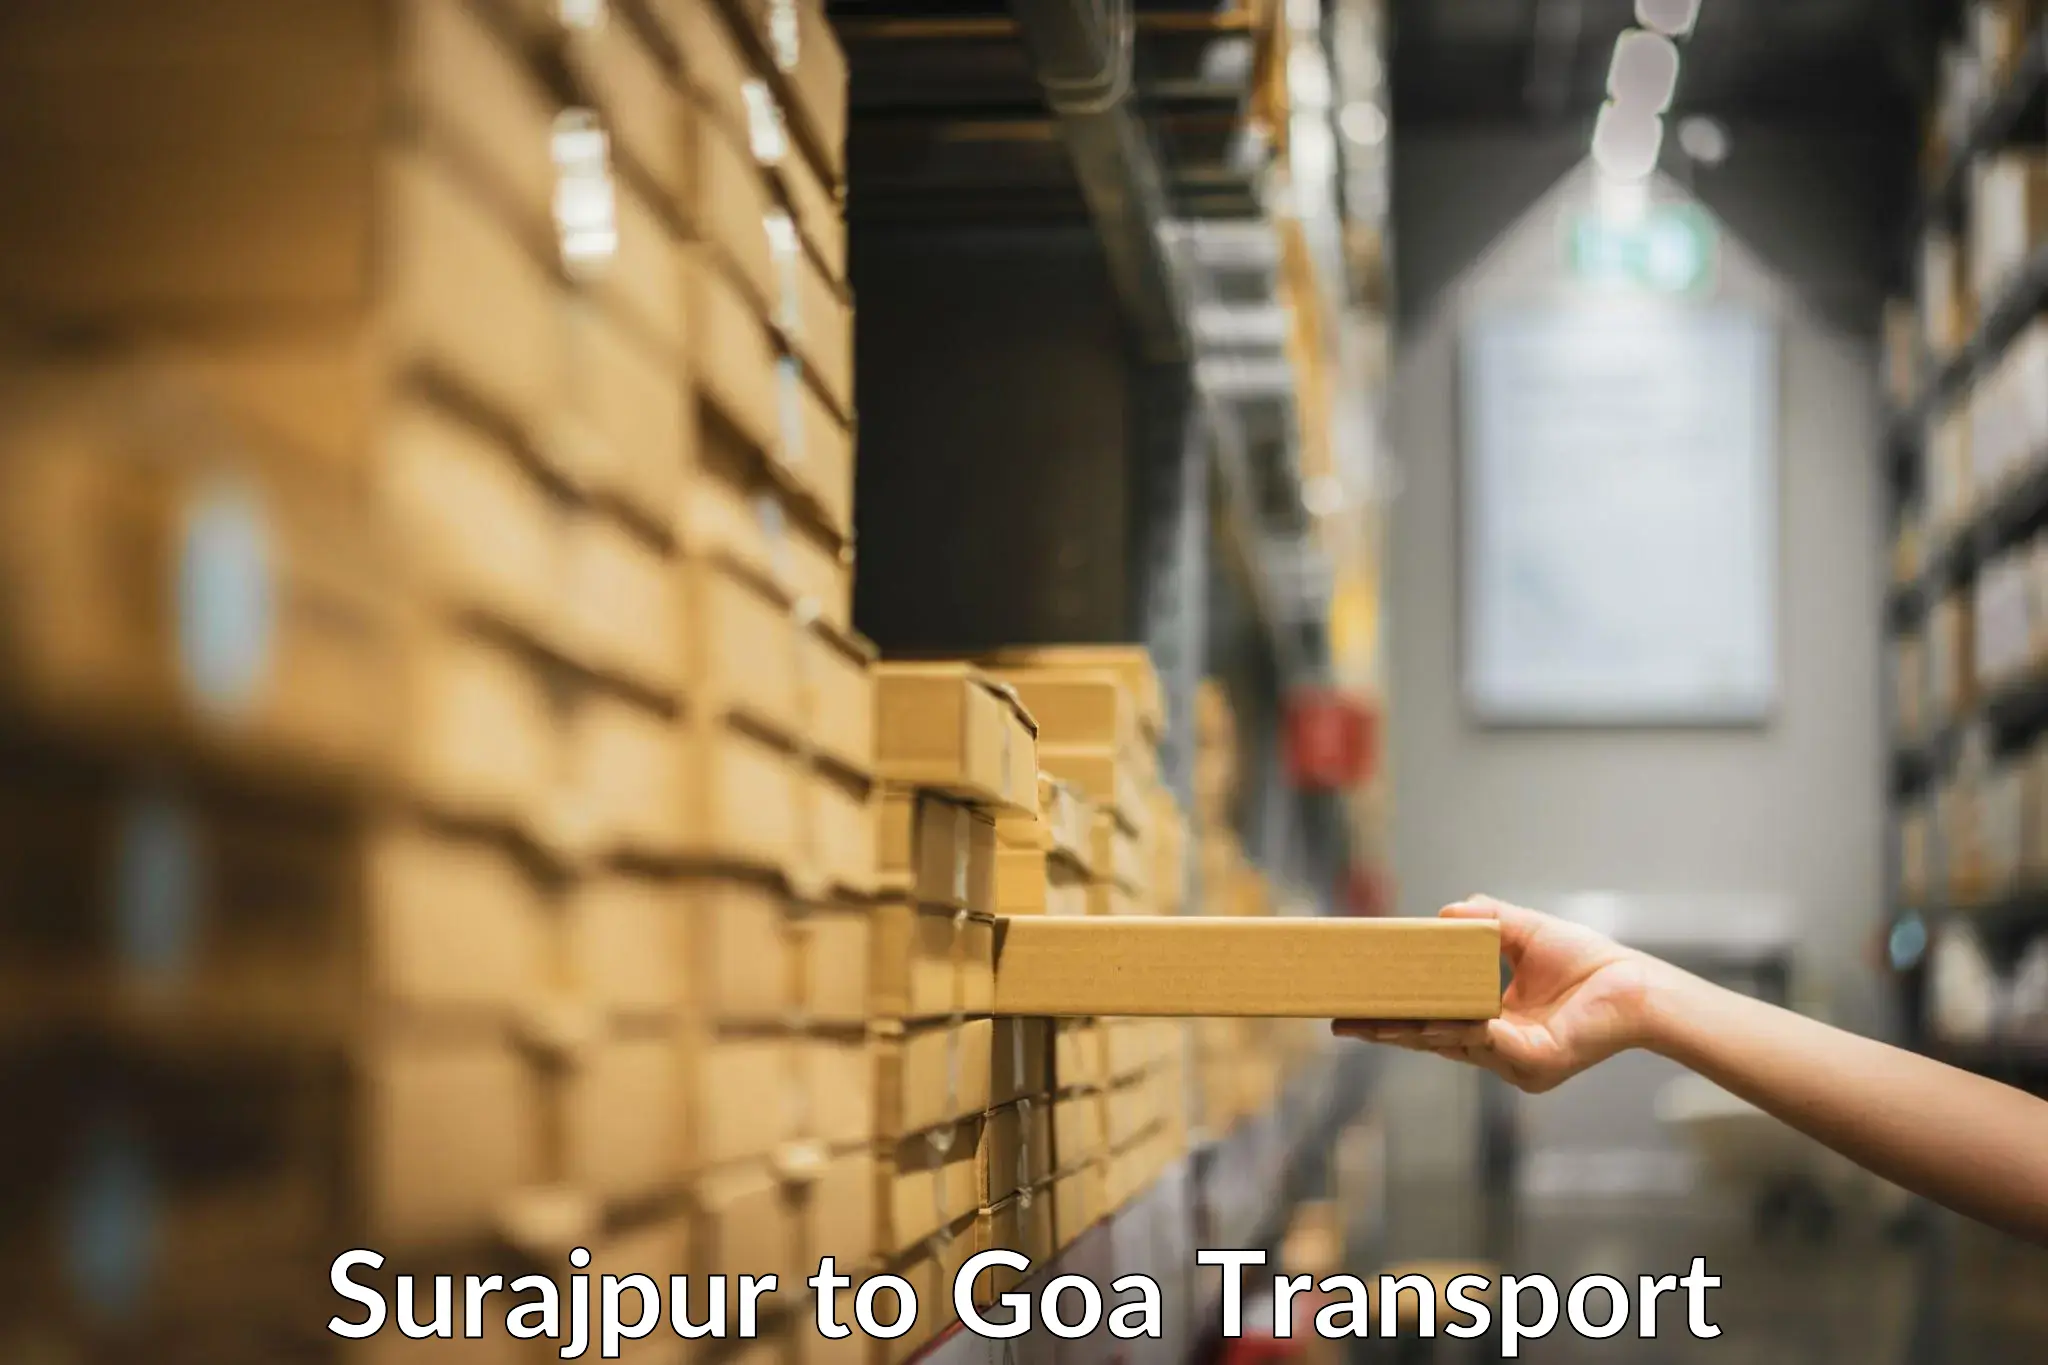 Cargo train transport services Surajpur to Mormugao Port